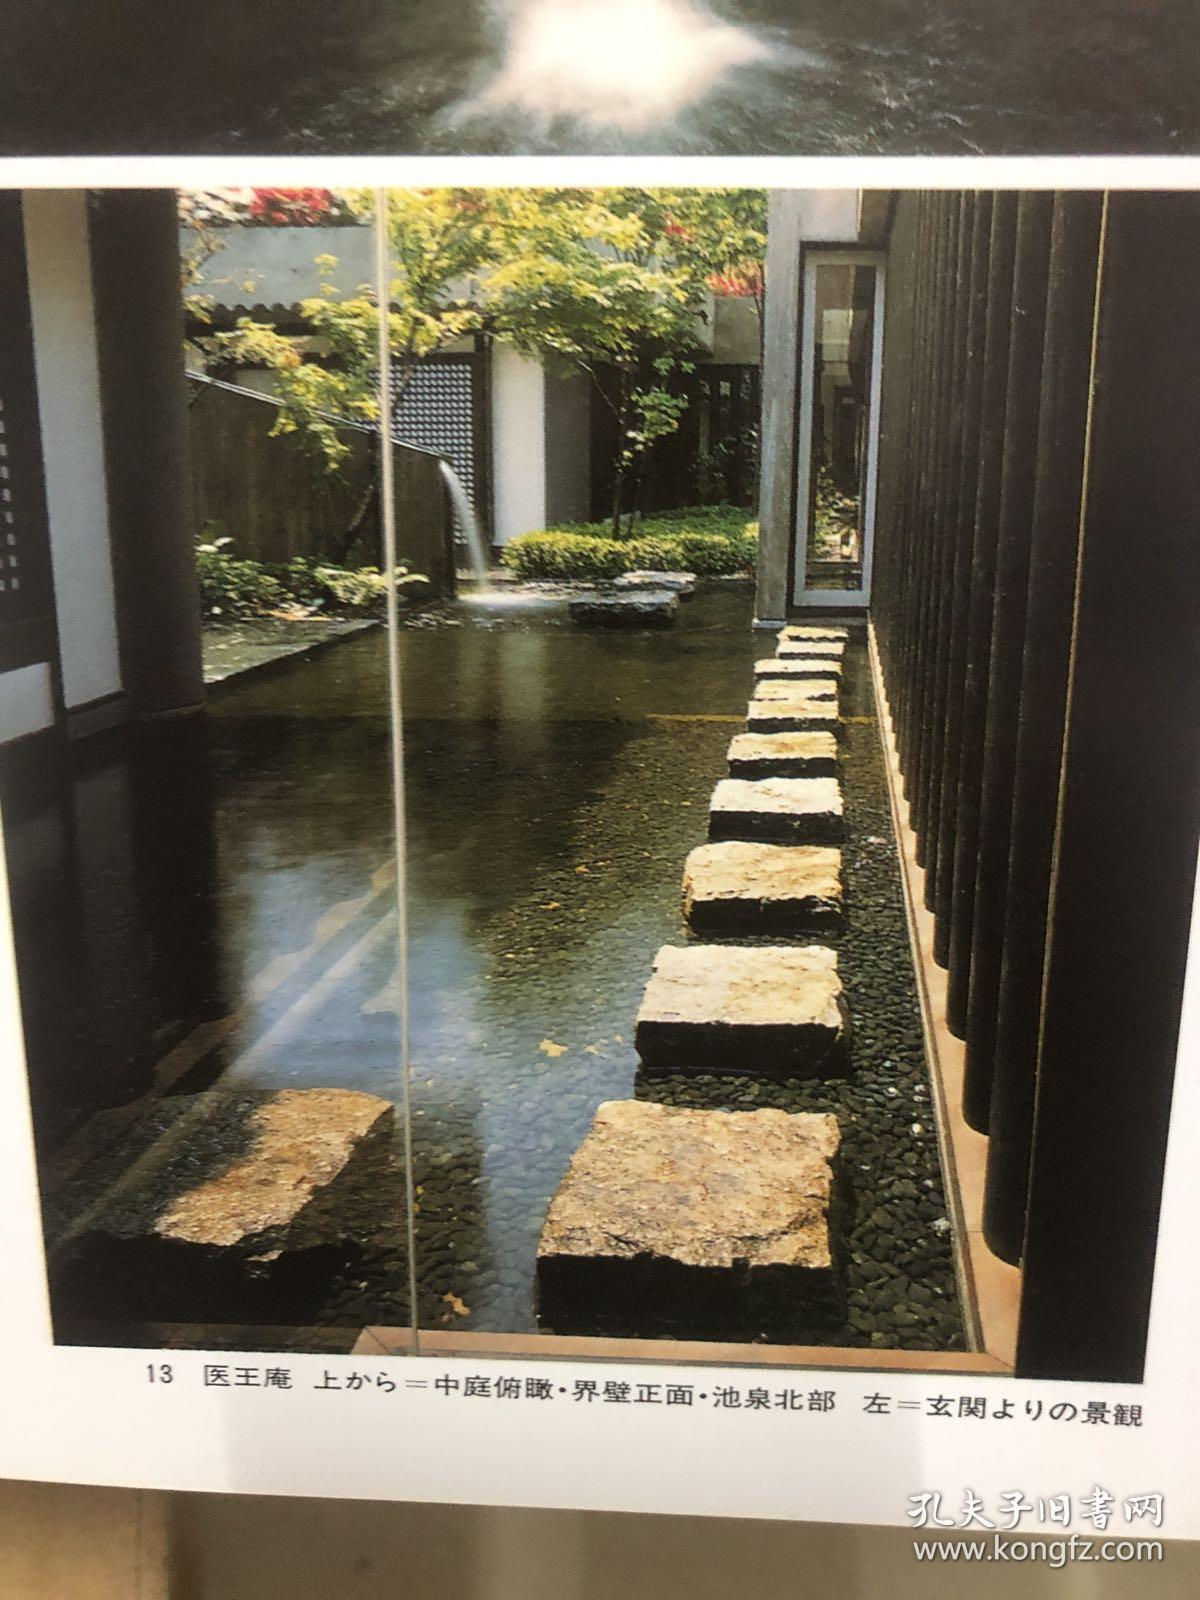 日本庭院集成1-4 日式庭院 枯山水 茶庭+坪庭+玄关庭+数寄庭